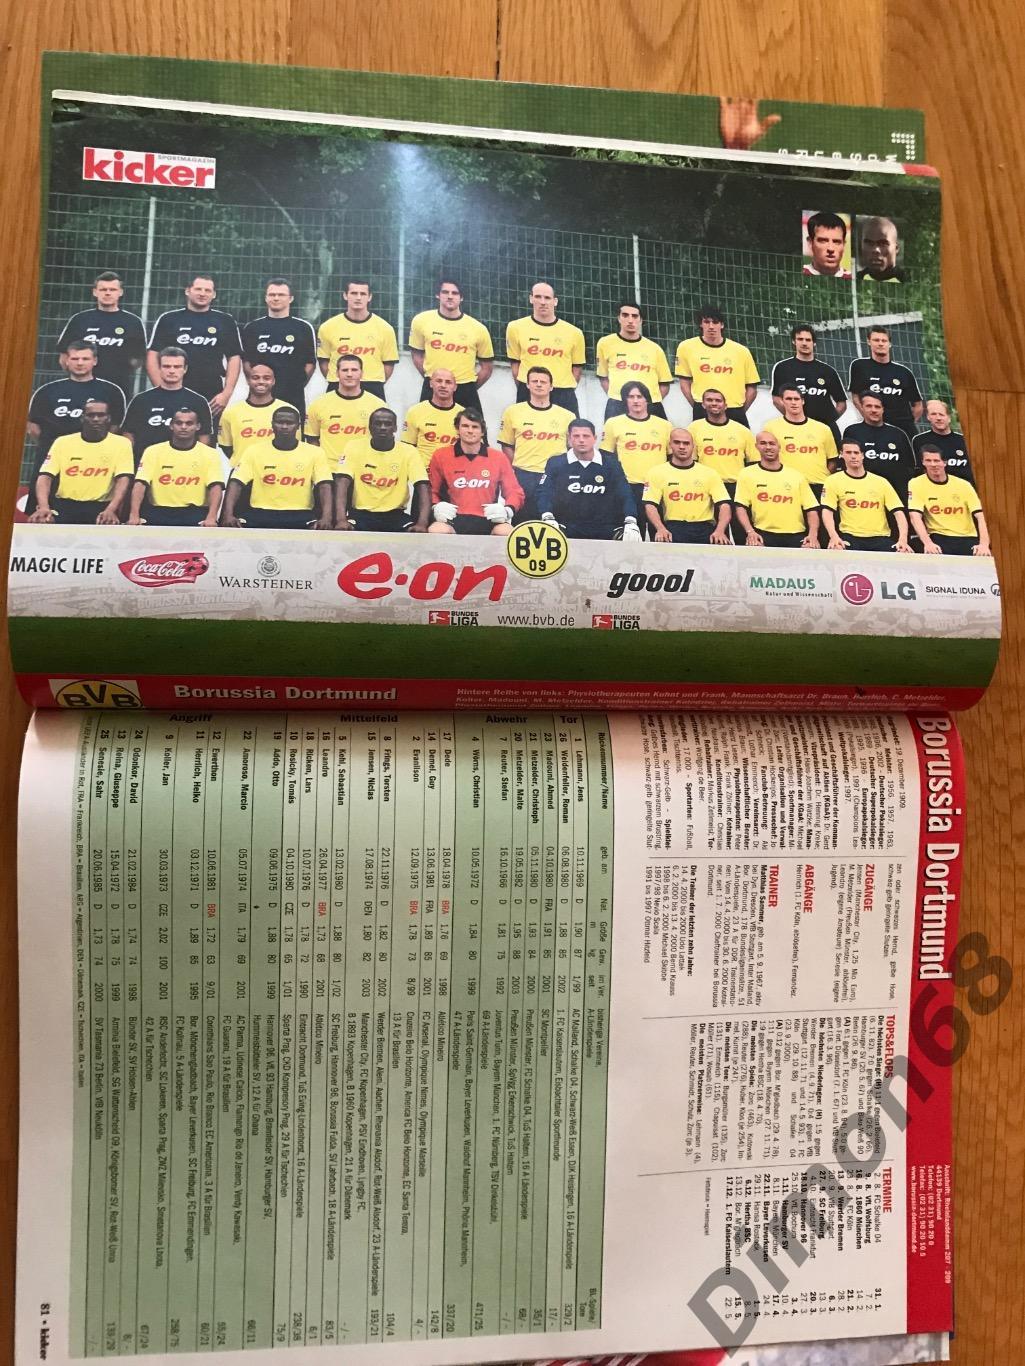 Kicker Bundesliga 2003/04г в идеальном состоянии только отсутствует центральный 4